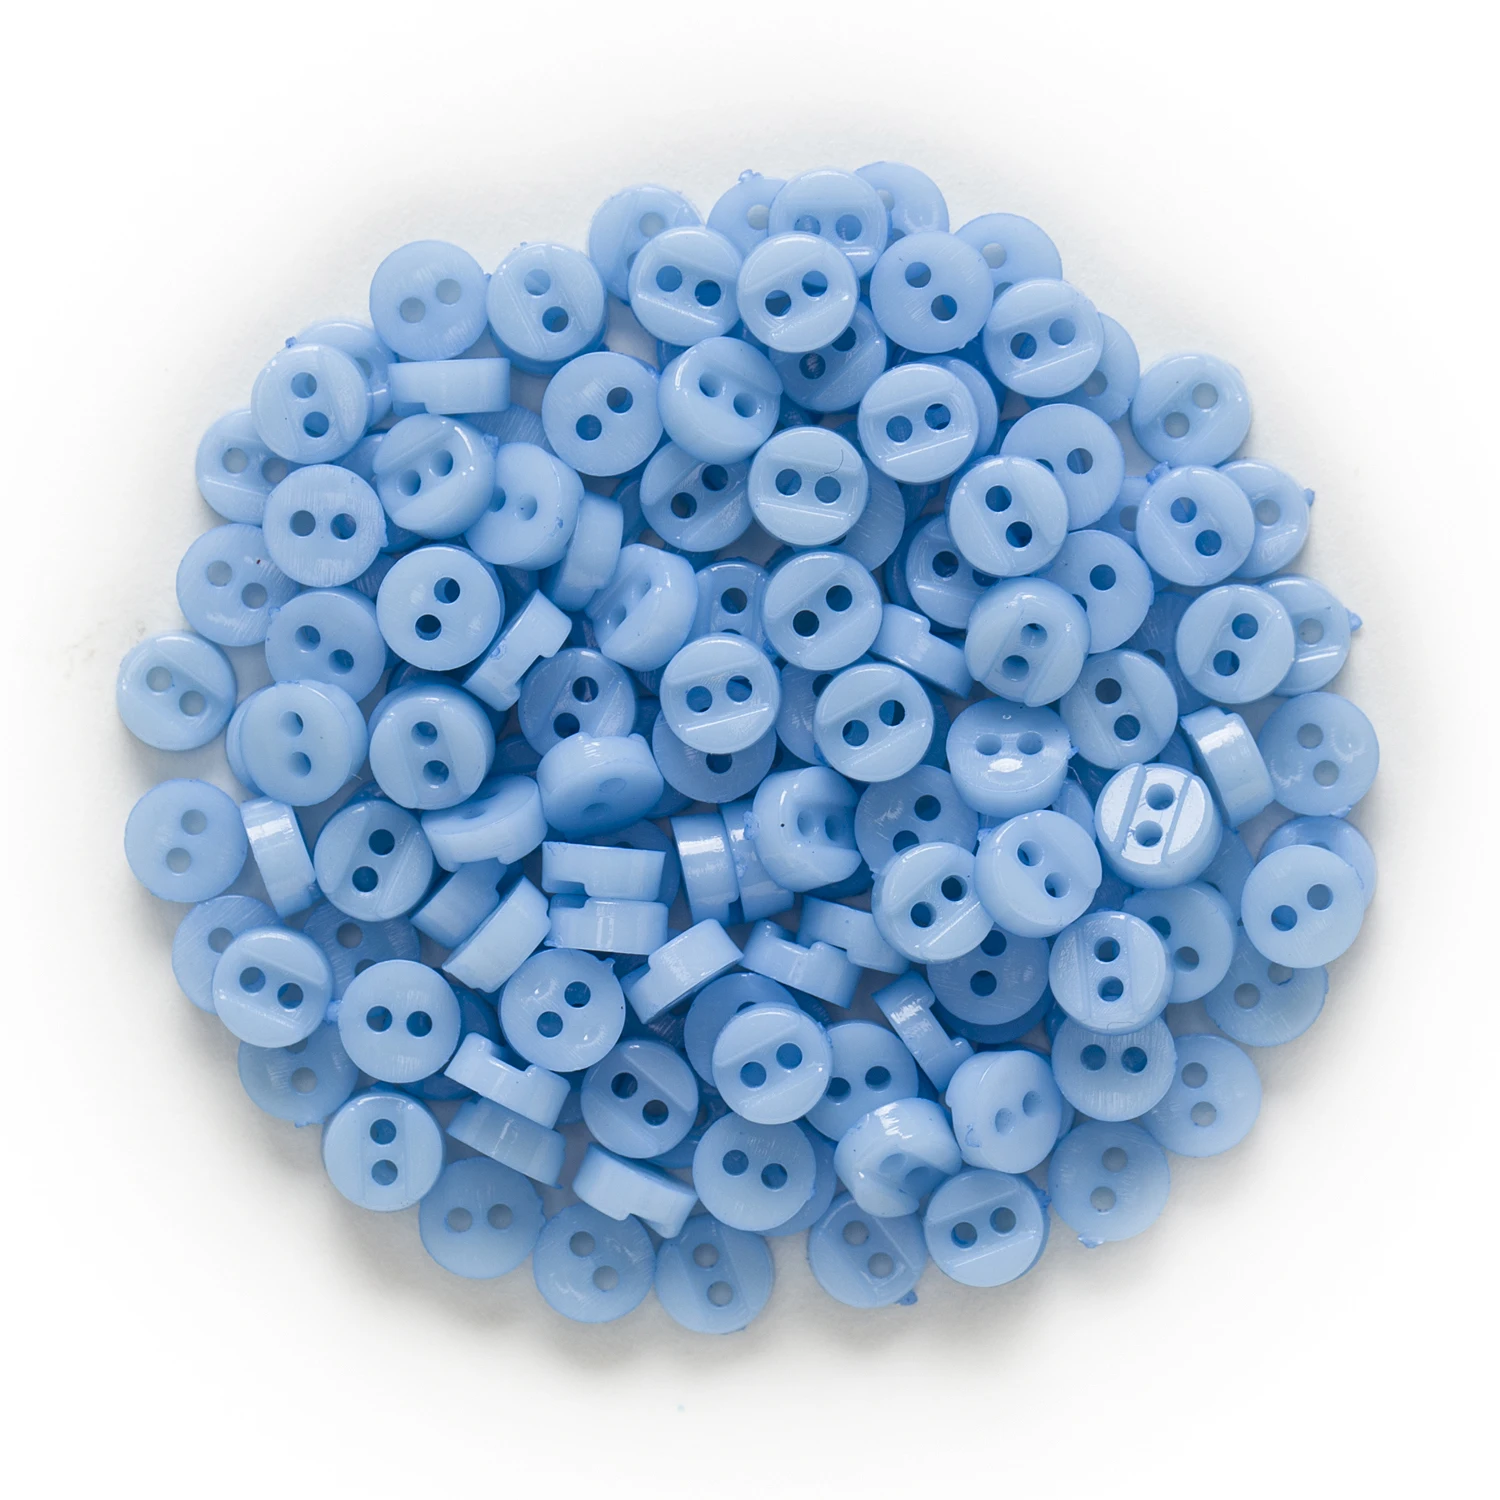 100 шт 6 мм многоцветные одноцветные 2 отверстия с зазором круглые полимерные кнопки для шитья скрапбукинга декор DIY - Цвет: Blue